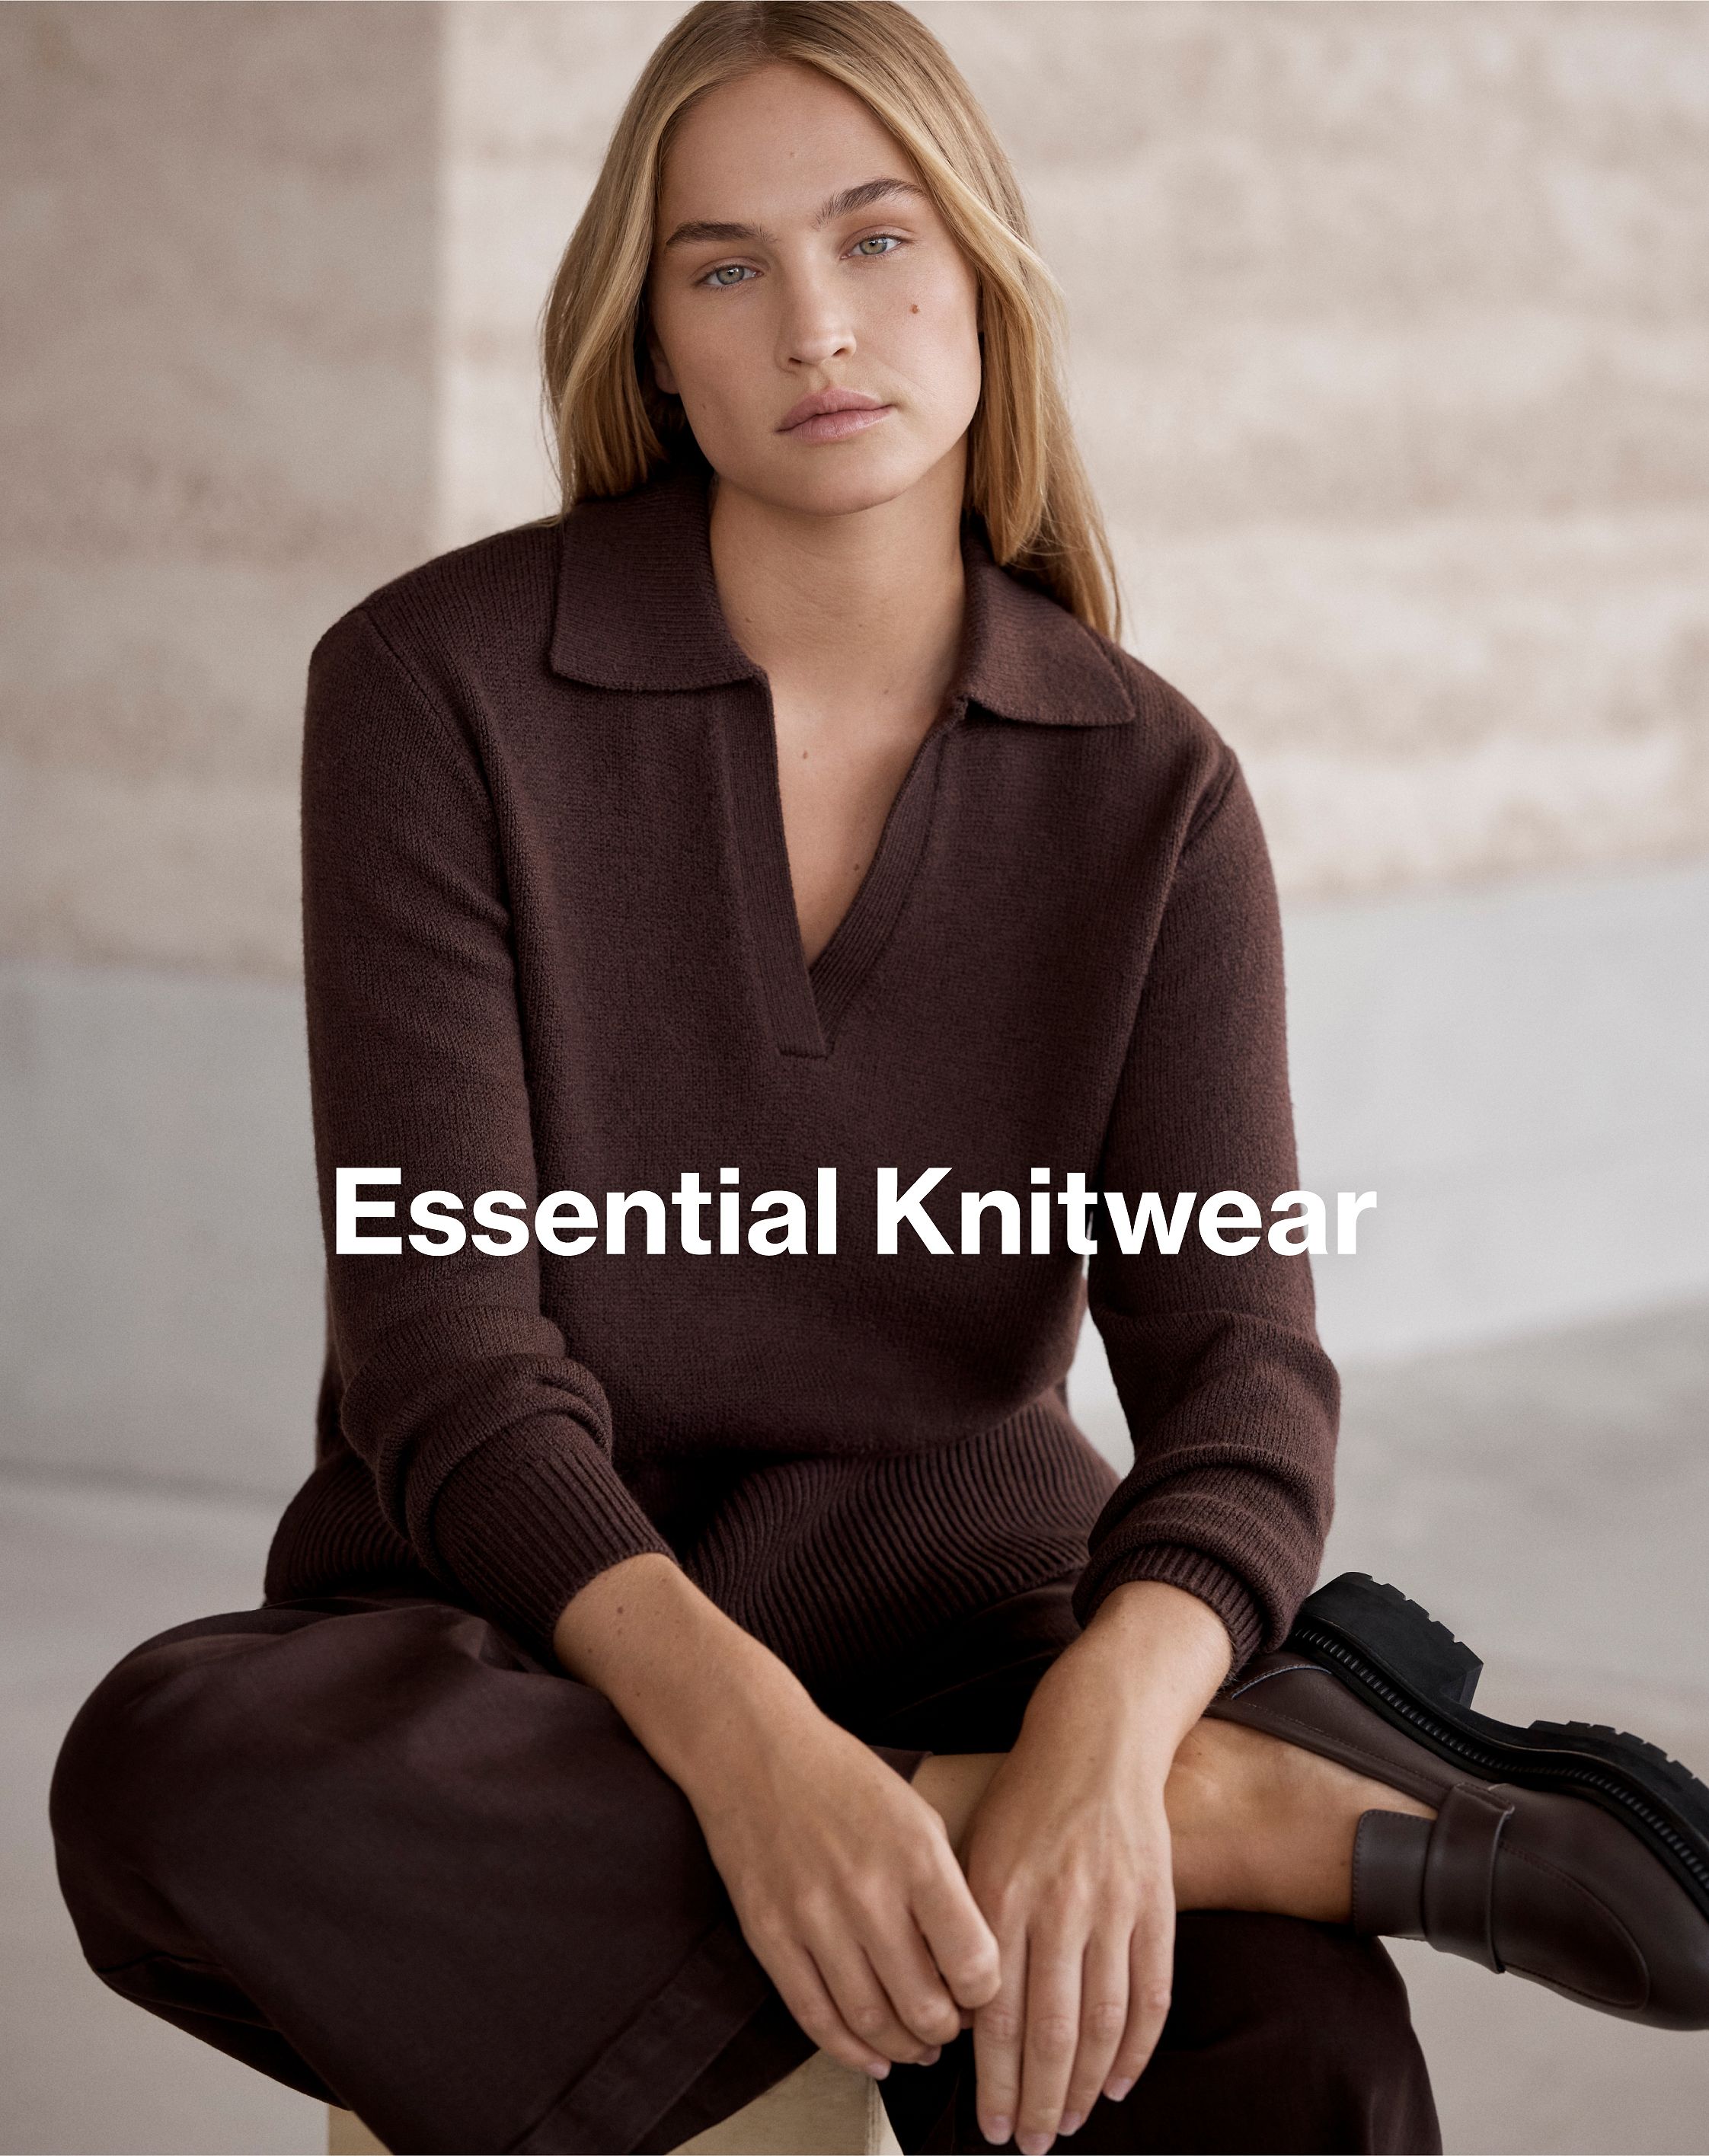 Essential Knitwear